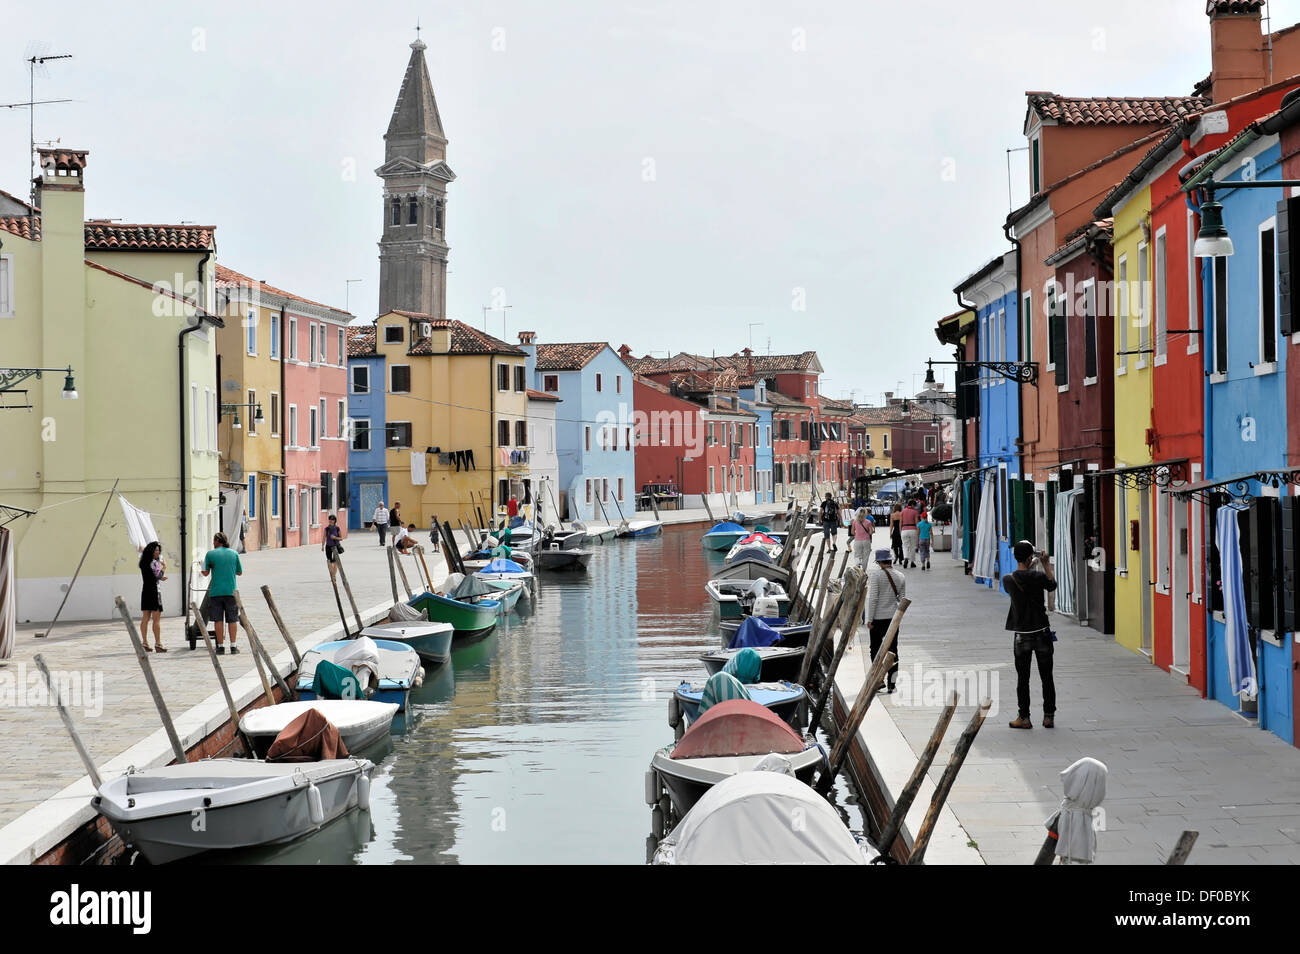 Dipinto di colorate case, barche sul canale di Burano, l'isola di Burano nella laguna di Venezia, Italia e Europa Foto Stock